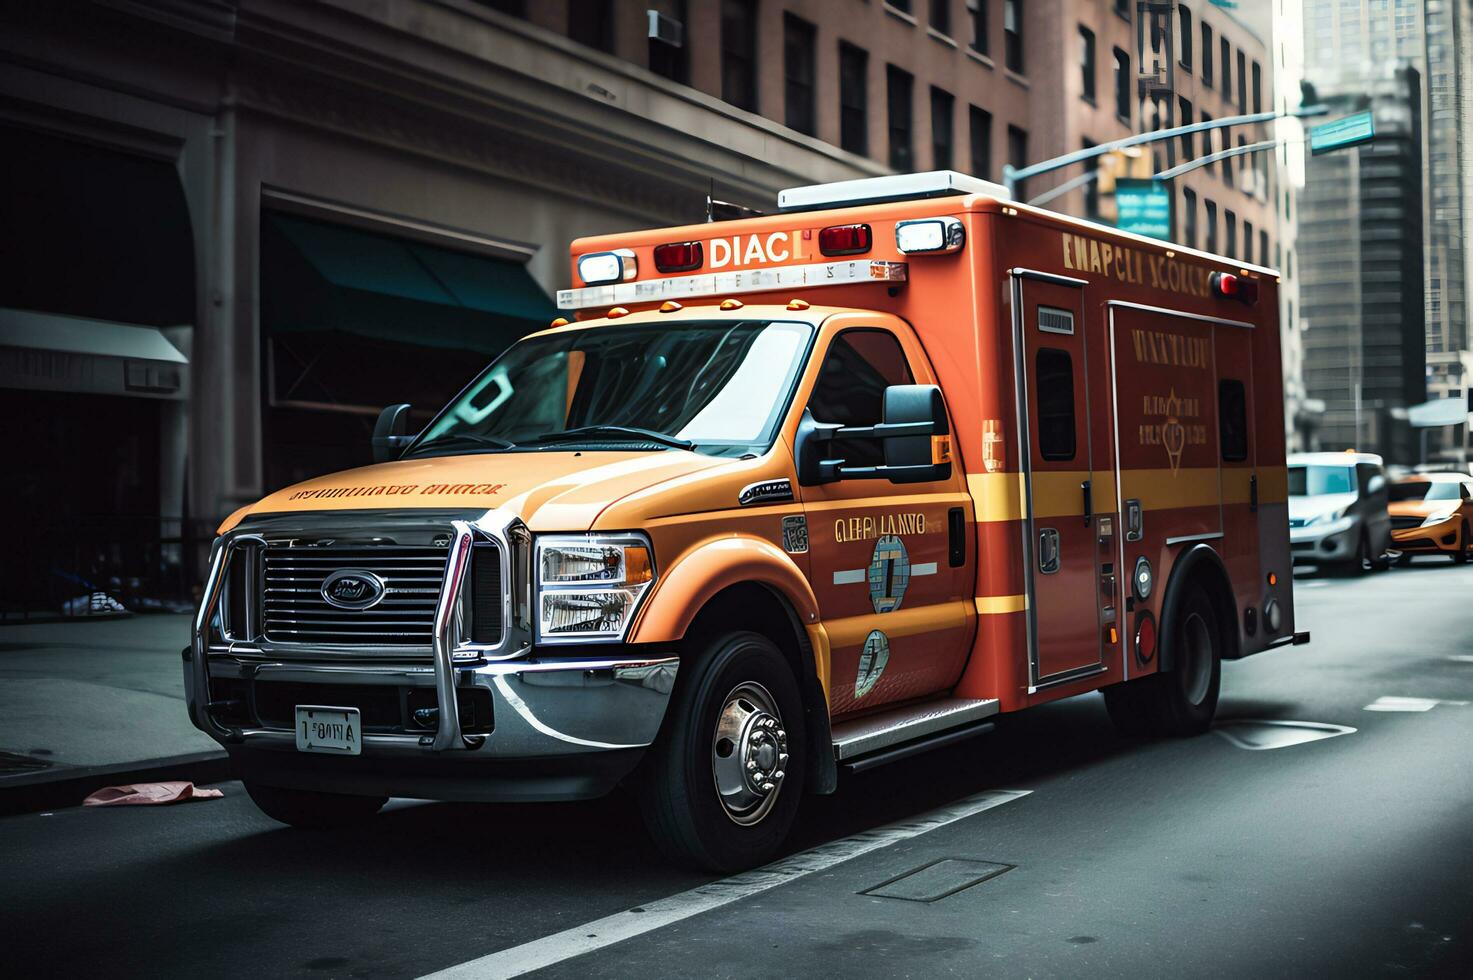 medisch noodgeval ambulance auto Aan de straat foto